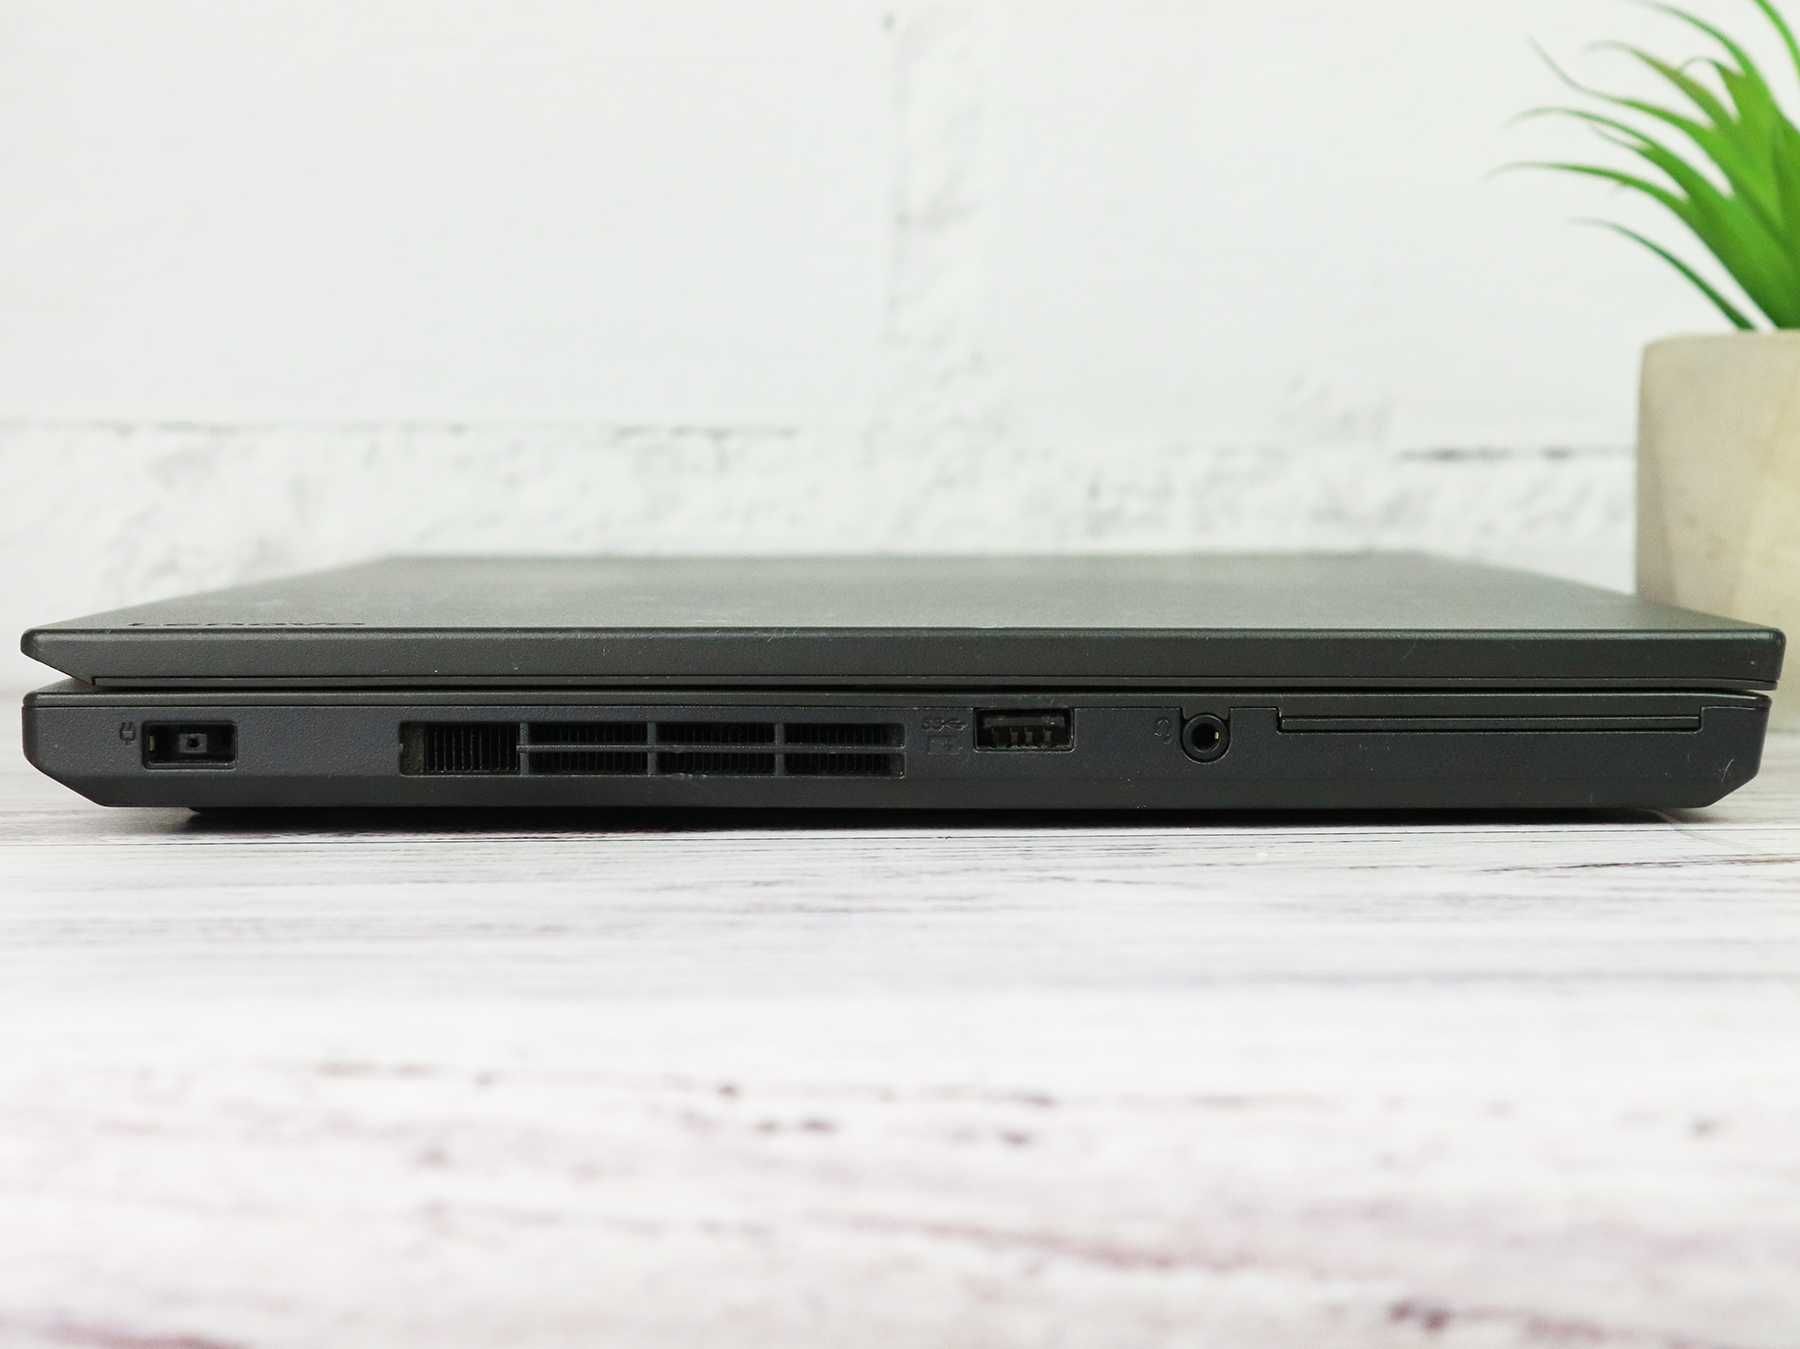 Ноутбук 14" Lenovo ThinkPad L470 Core i5-7200U 8/256Gb SSD FullHD IPS